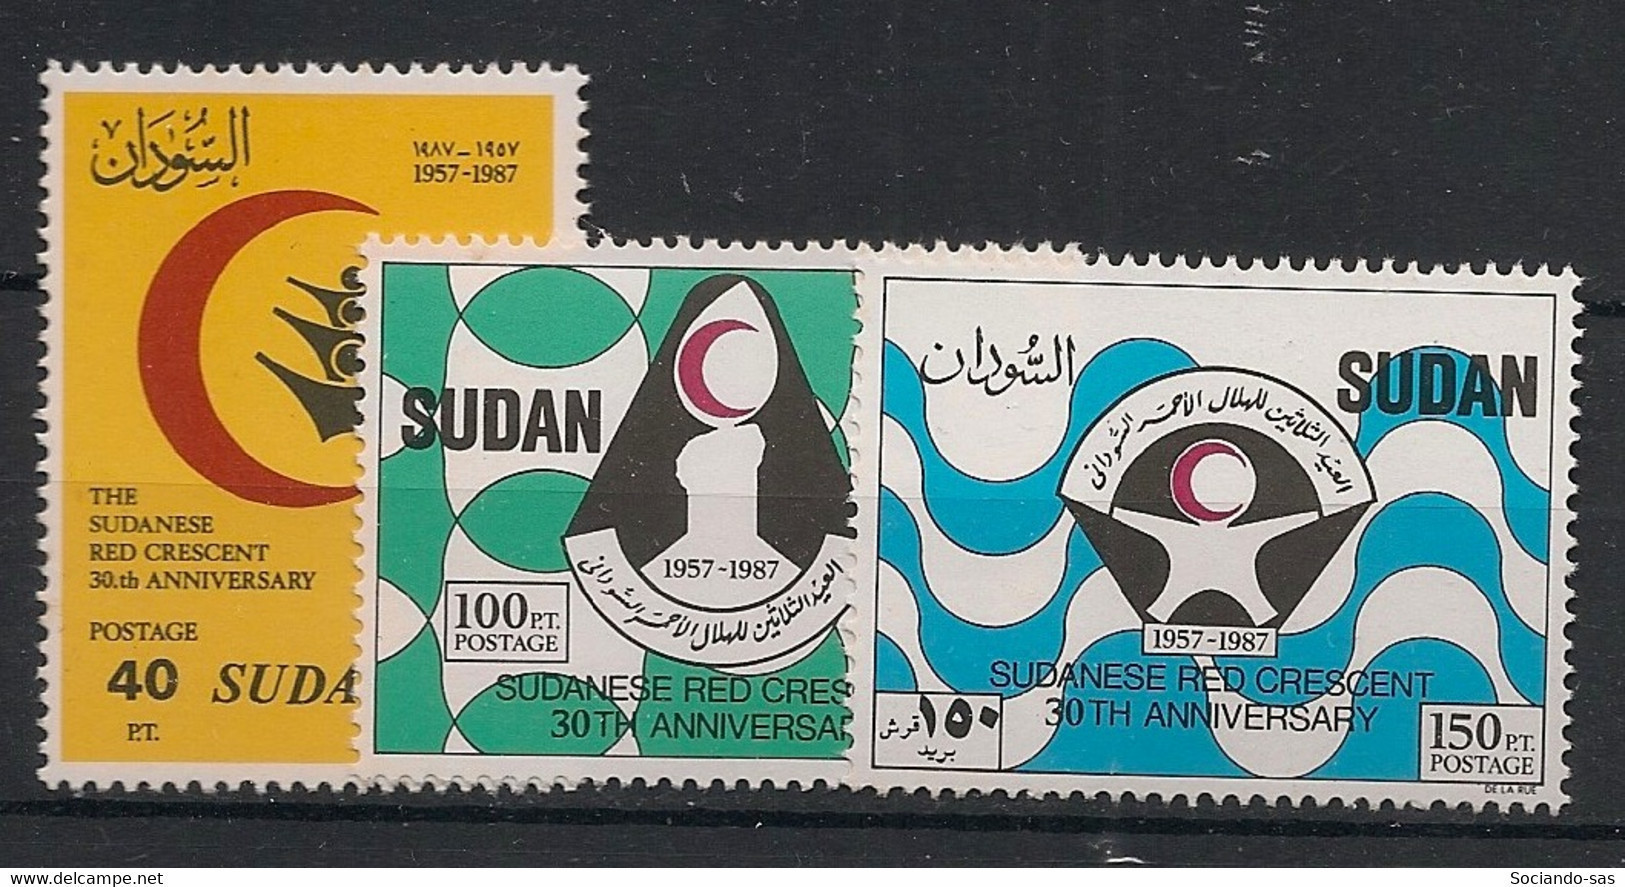 SOUDAN - 1989 - N°YT. 362 à 364 - Croissant Rouge - Neuf Luxe ** / MNH / Postfrisch - Sudan (1954-...)